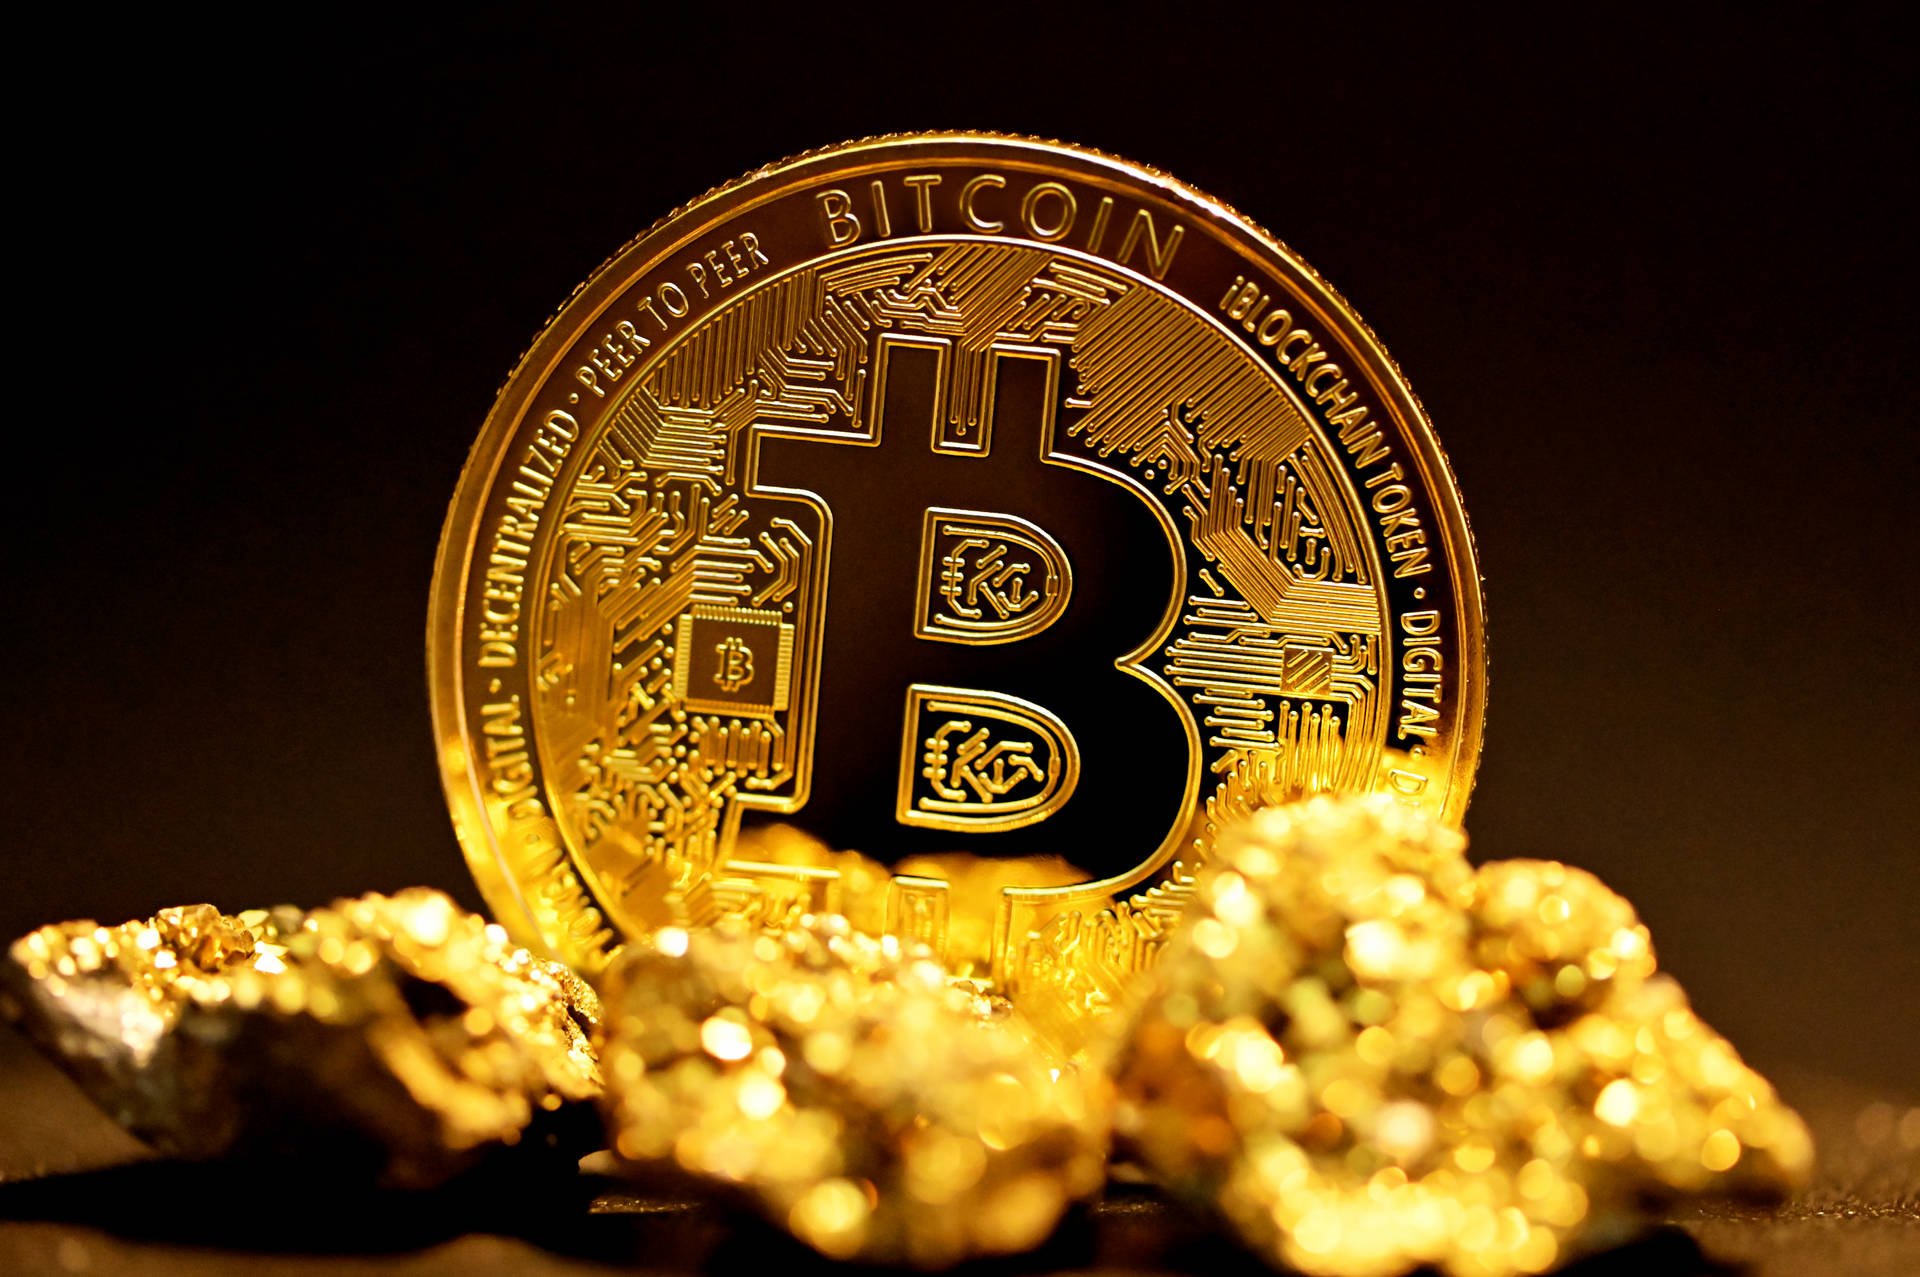 Brilliant Gold Bitcoin Picture